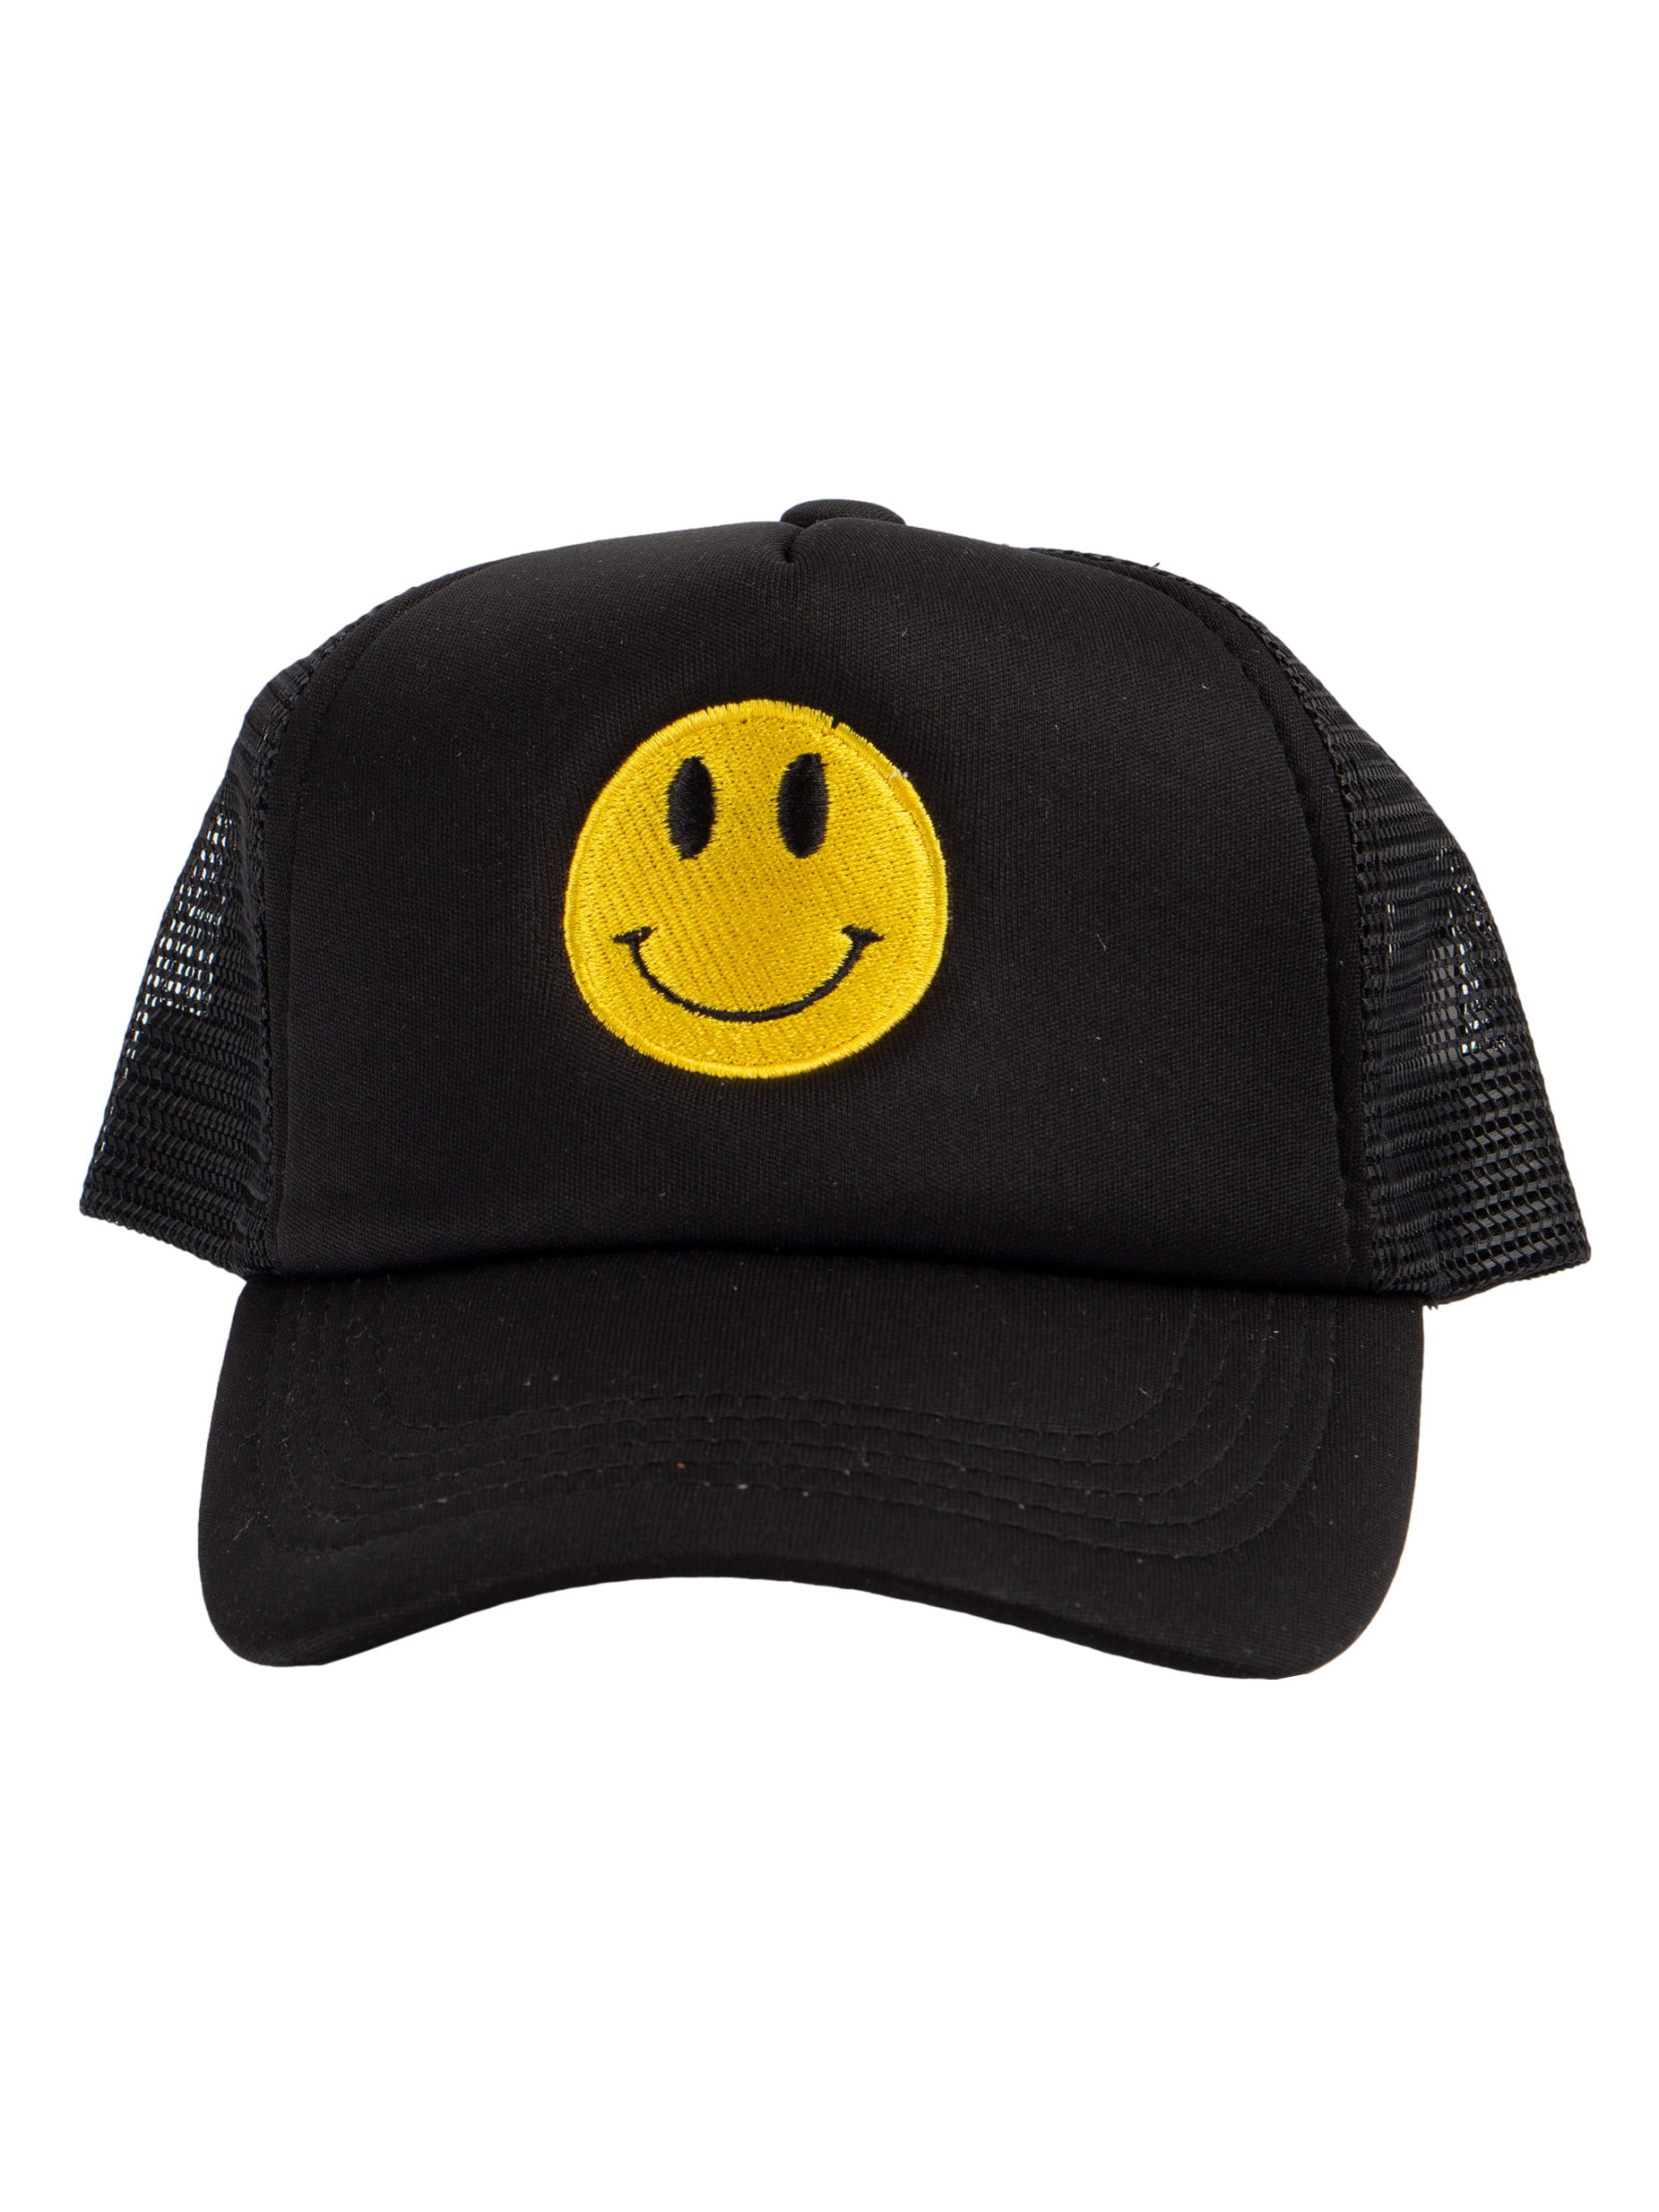 Headwear Smile Kids Unisex Youth Trucker Top Black/White Snapback Cap,